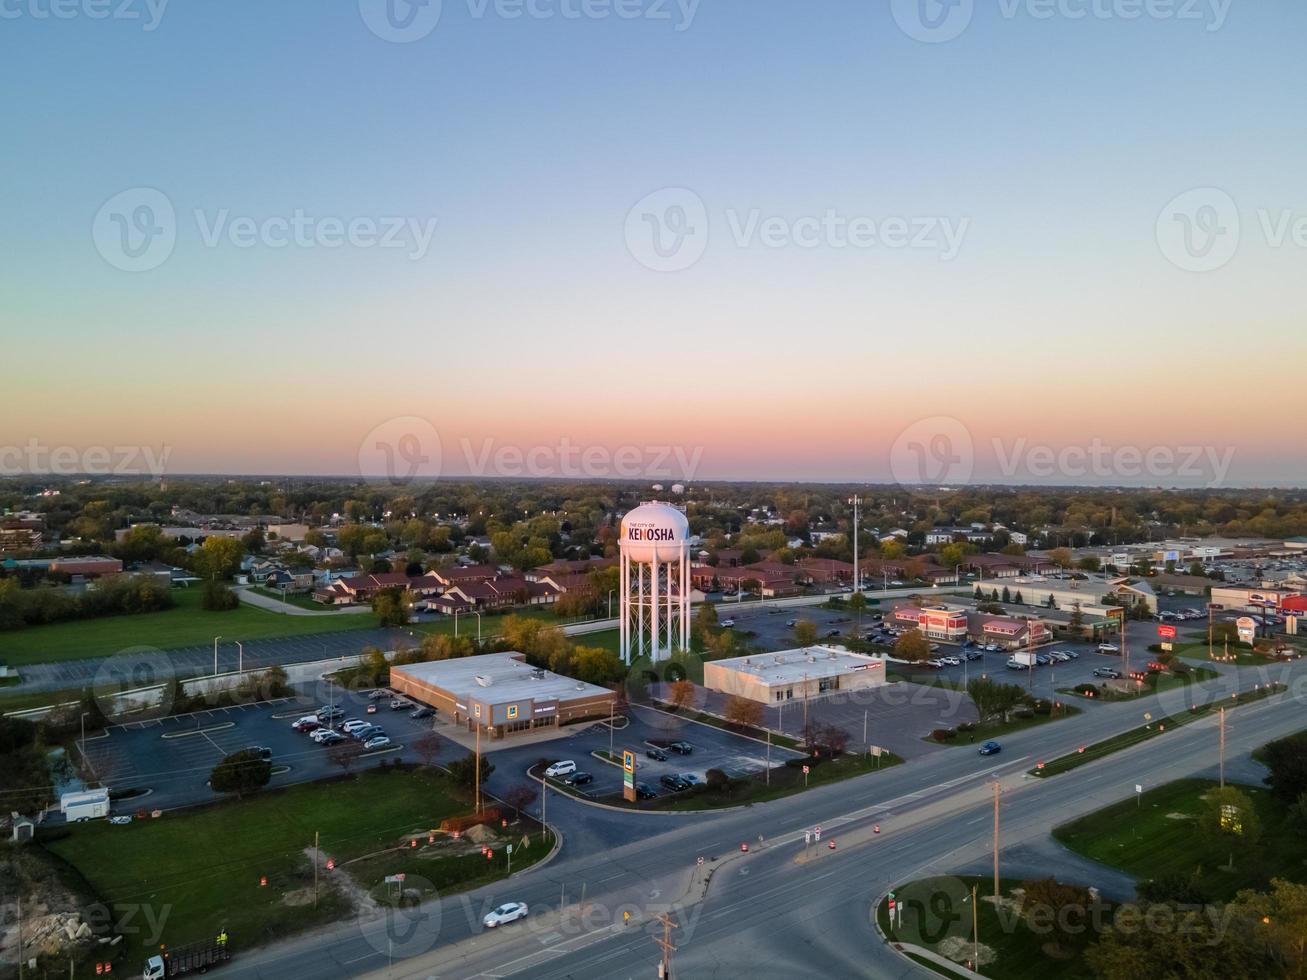 luchtfoto van stedelijk gebied met prominente watertoren in stadsbrede snelweg groot industriegebied met parkeerplaats eengezinswoningen op de achtergrond zon begint onder te gaan foto